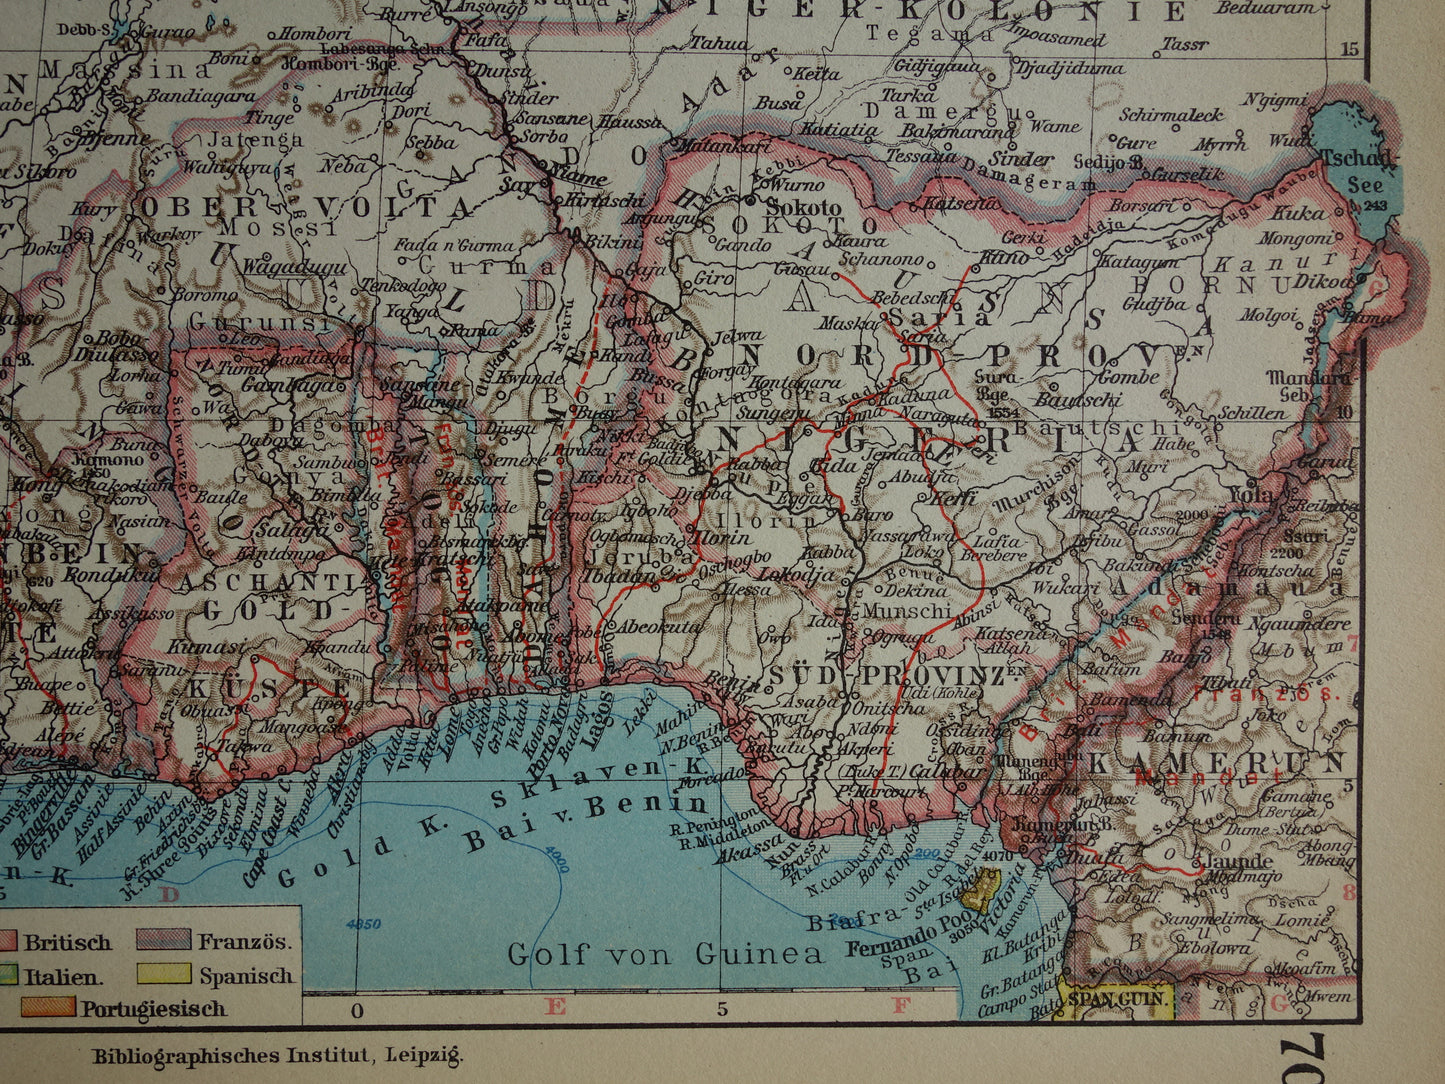 Oude kaart van Noordwest-Afrika in 1928 Originele vintage kaart van Sahara Goudkust Sahel Guinea Senegal Nigeria